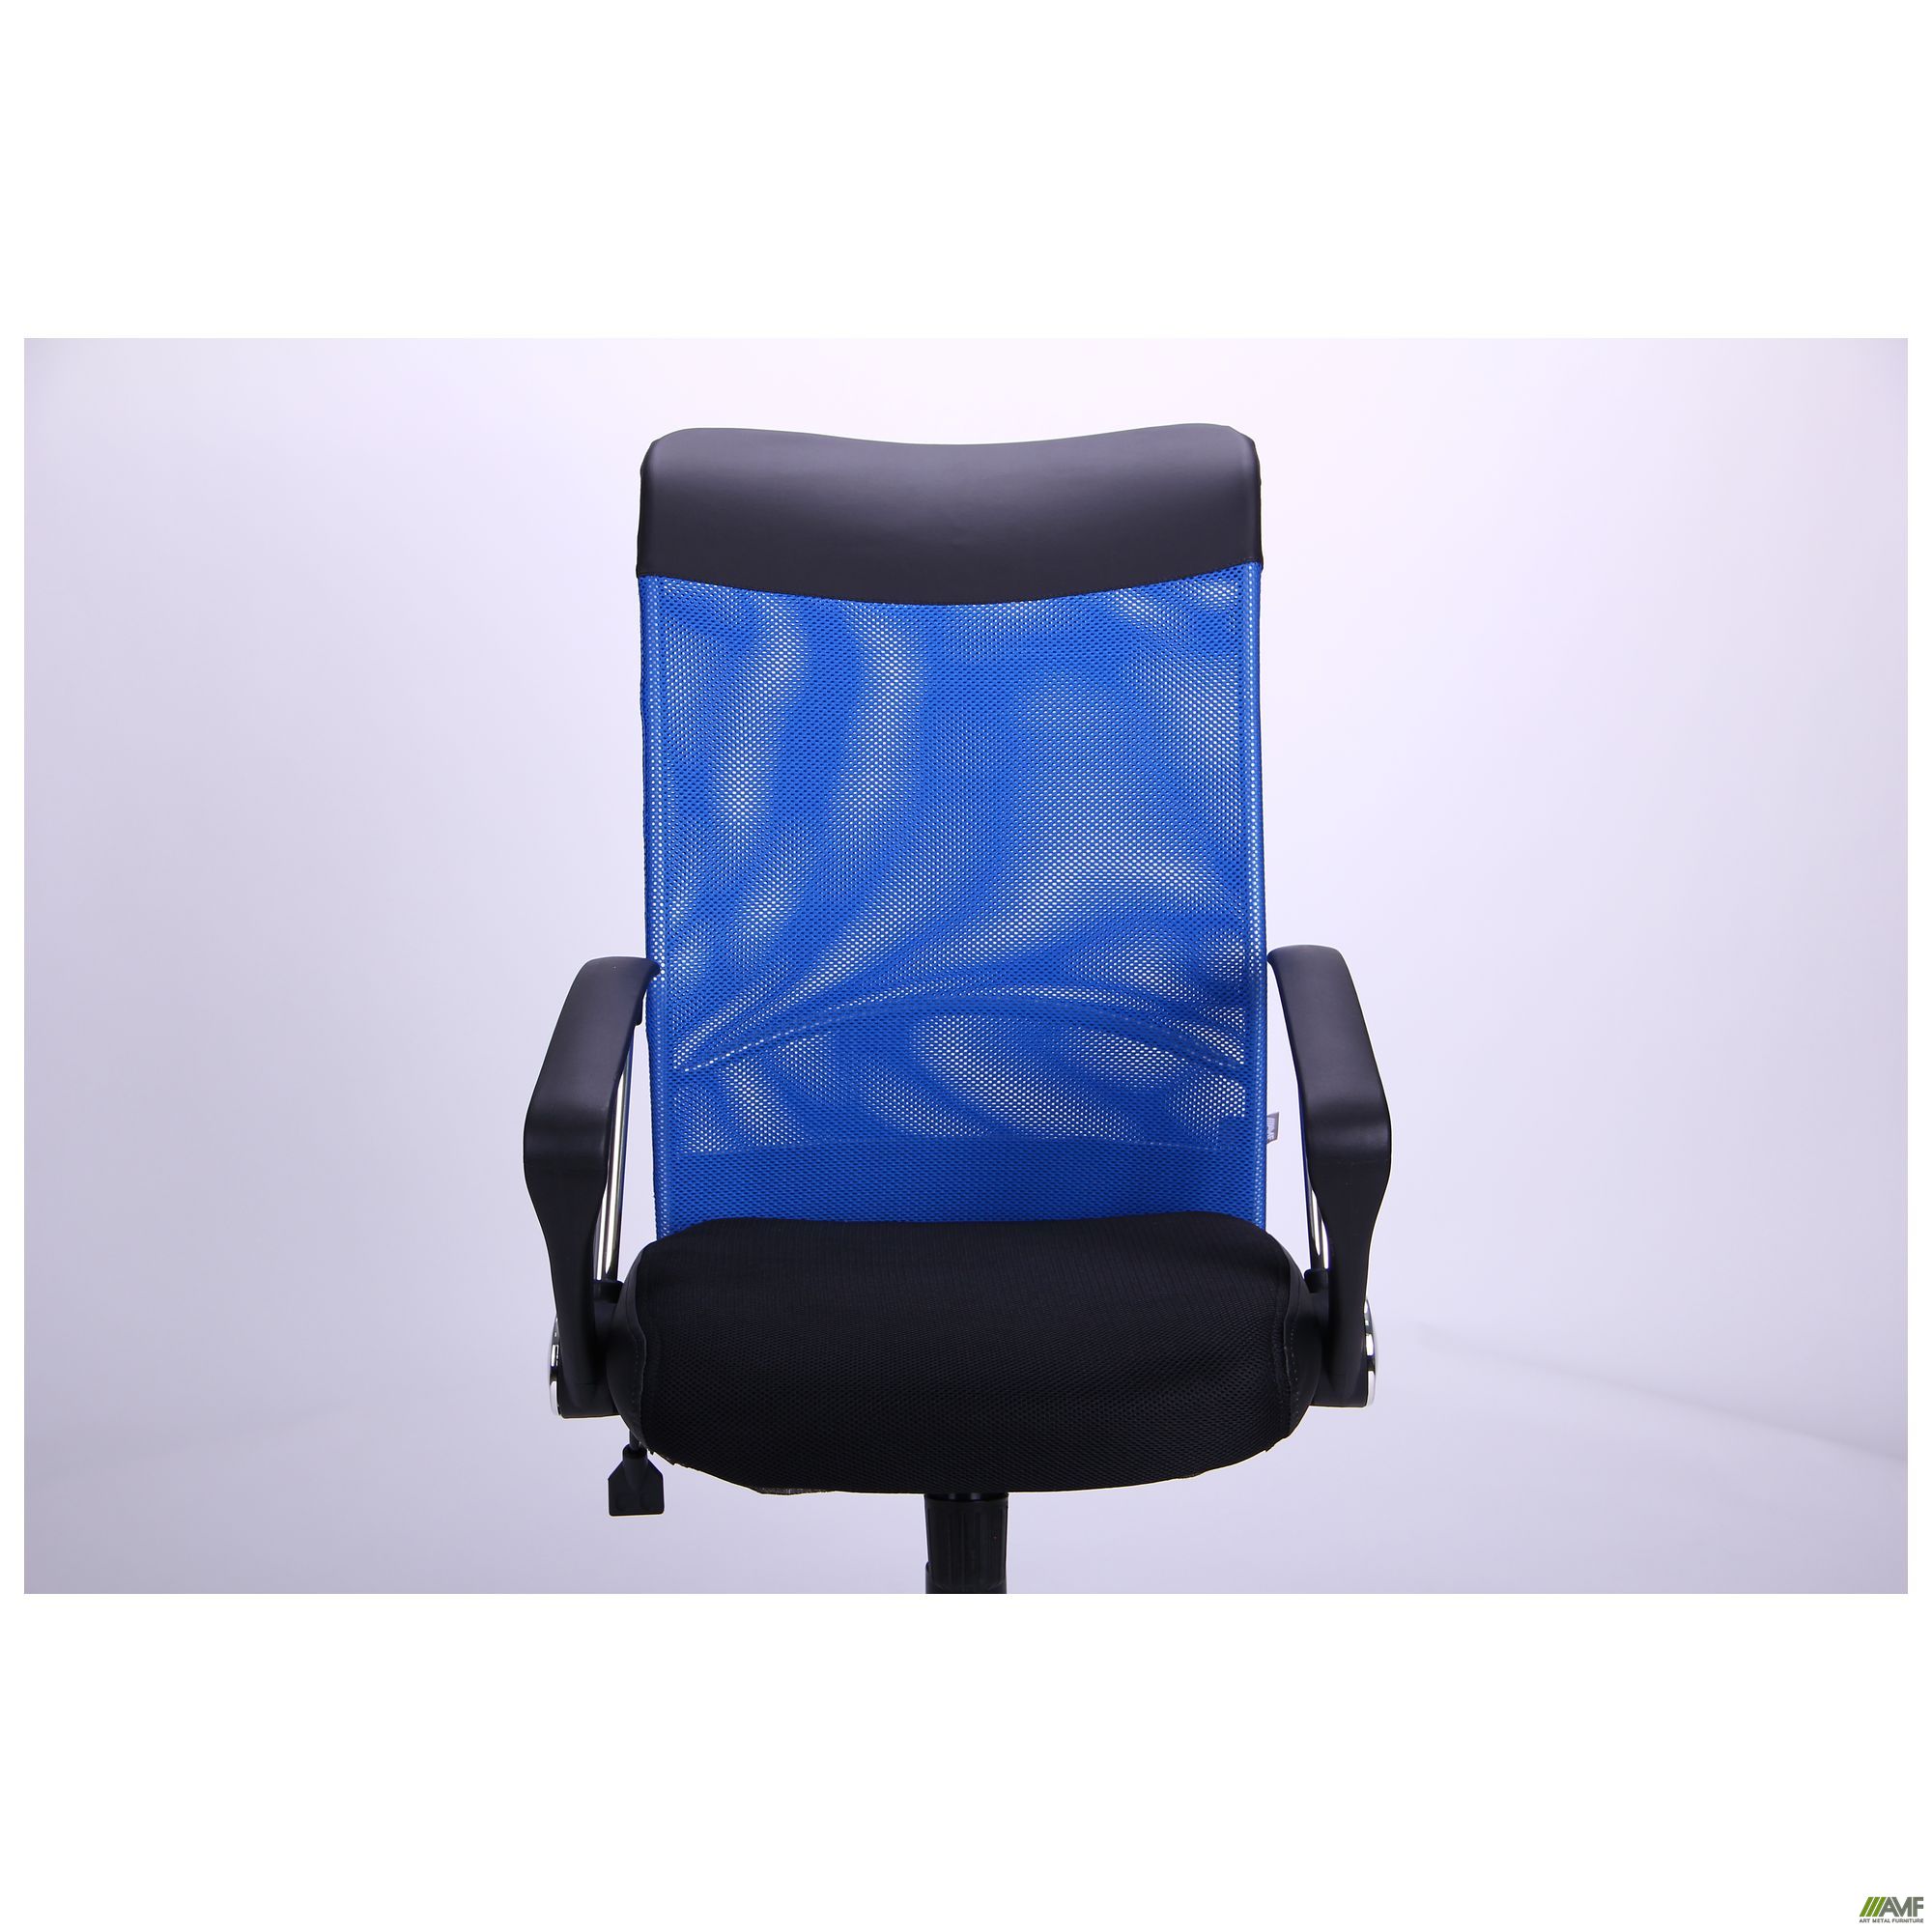 Фото 6 - Кресло АЭРО HB Line Color сиденье Сетка чёрная,Неаполь N-20/спинка Сетка синяя, вставка Неаполь N-20 